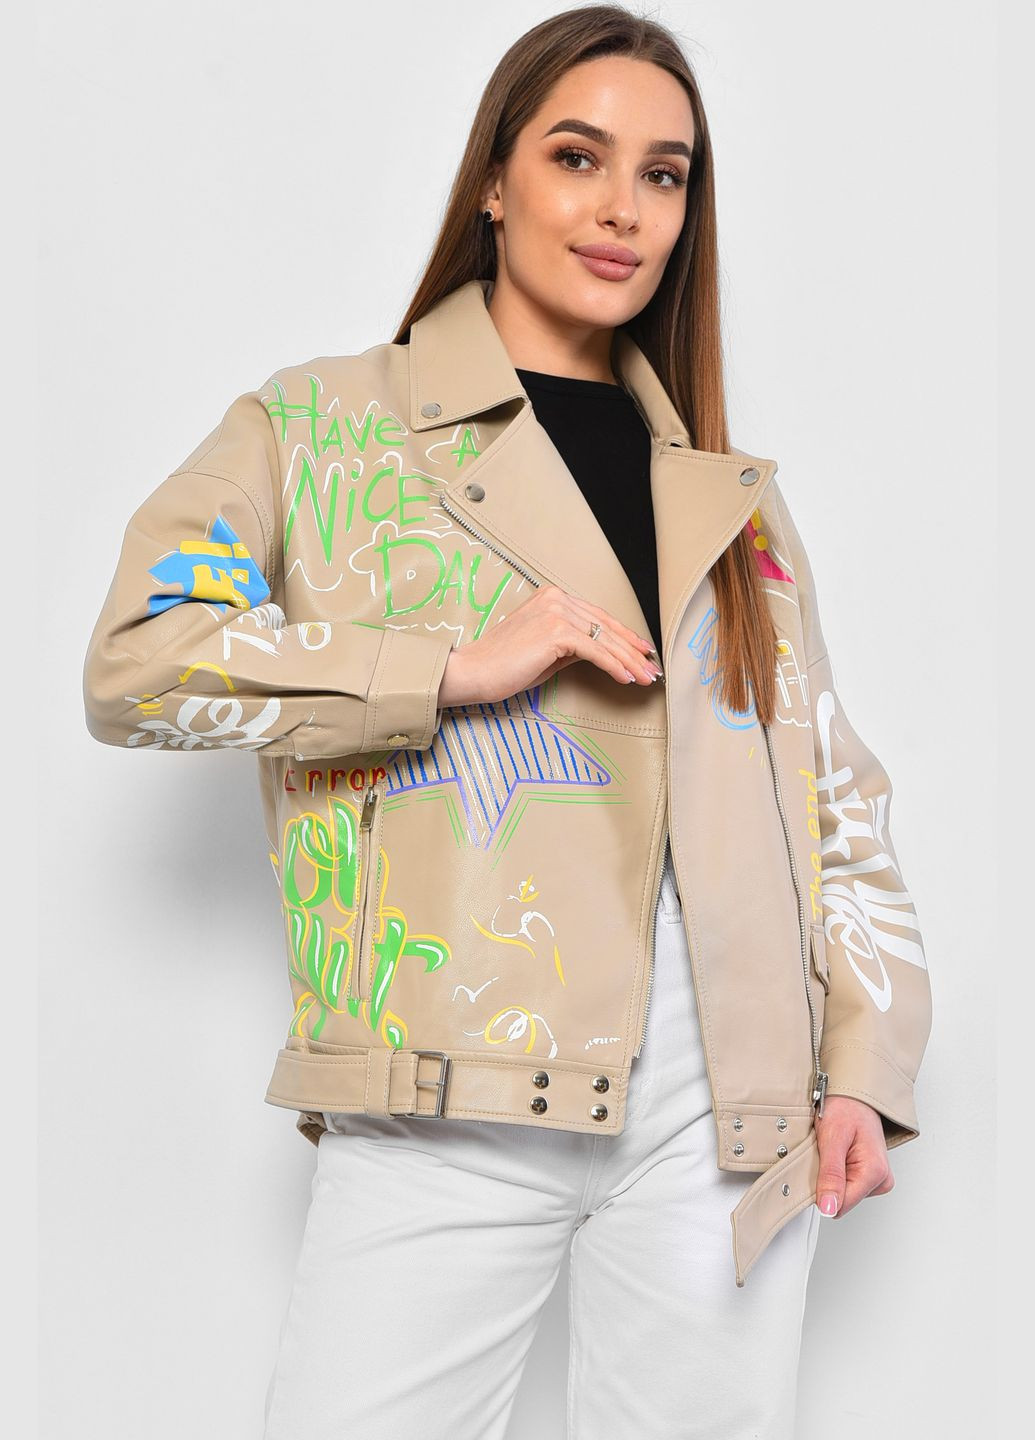 Бежевая демисезонная куртка женская из экокожи бежевого цвета Let's Shop